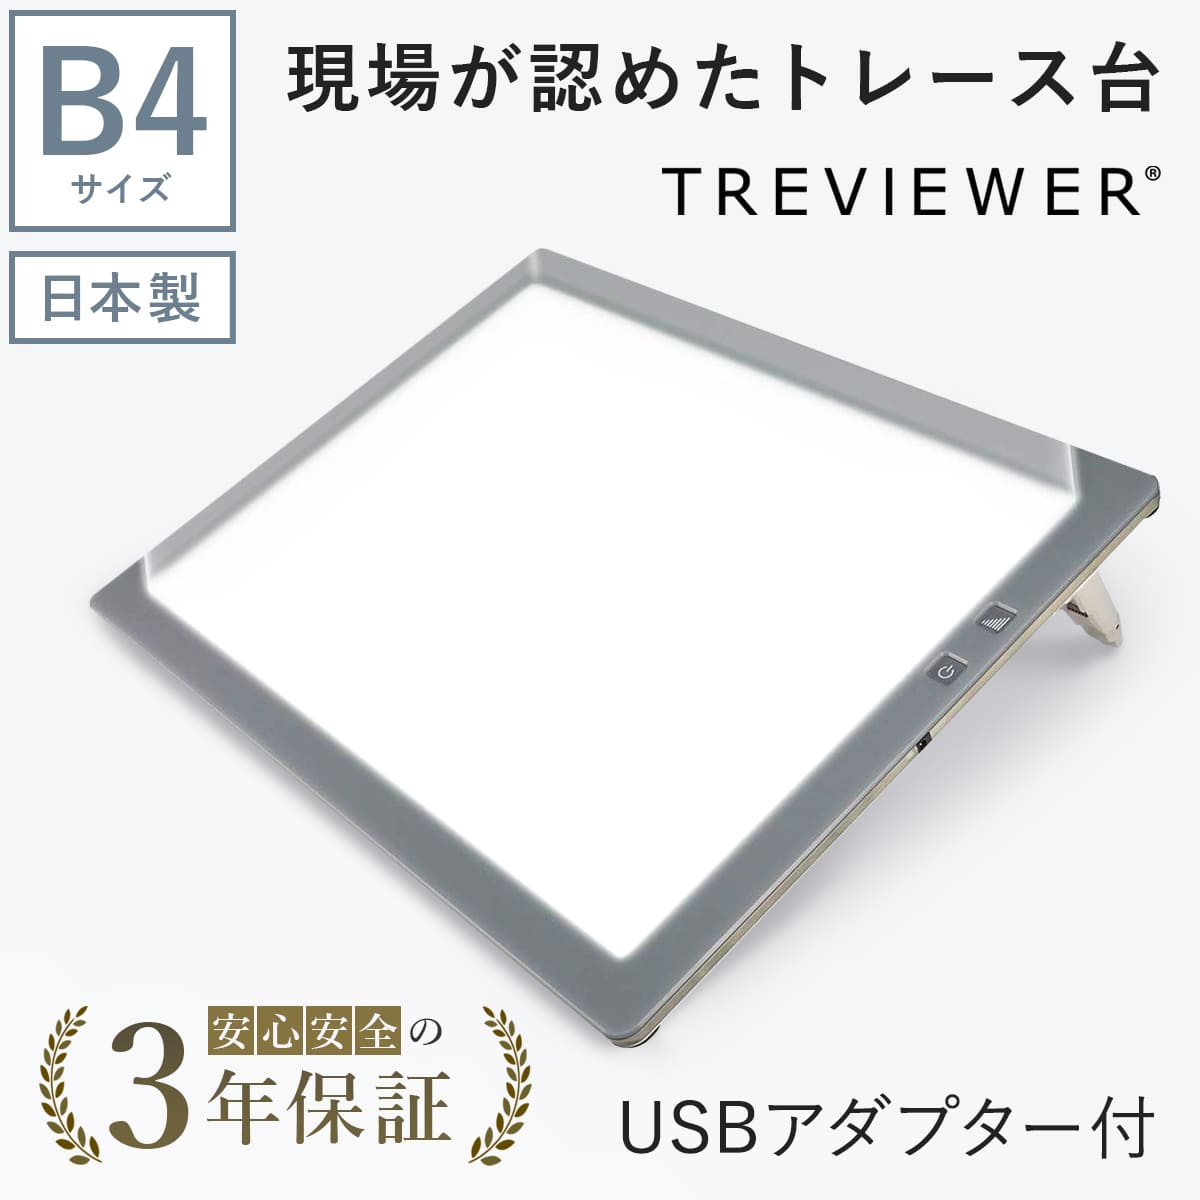 【日本製】 トレース台 トレビュアー B4 グレー  USBケーブル付き 薄型 7段階調光 3年保証 B4-500-02 ライトボックス ライトボード ライトテーブル トライテック